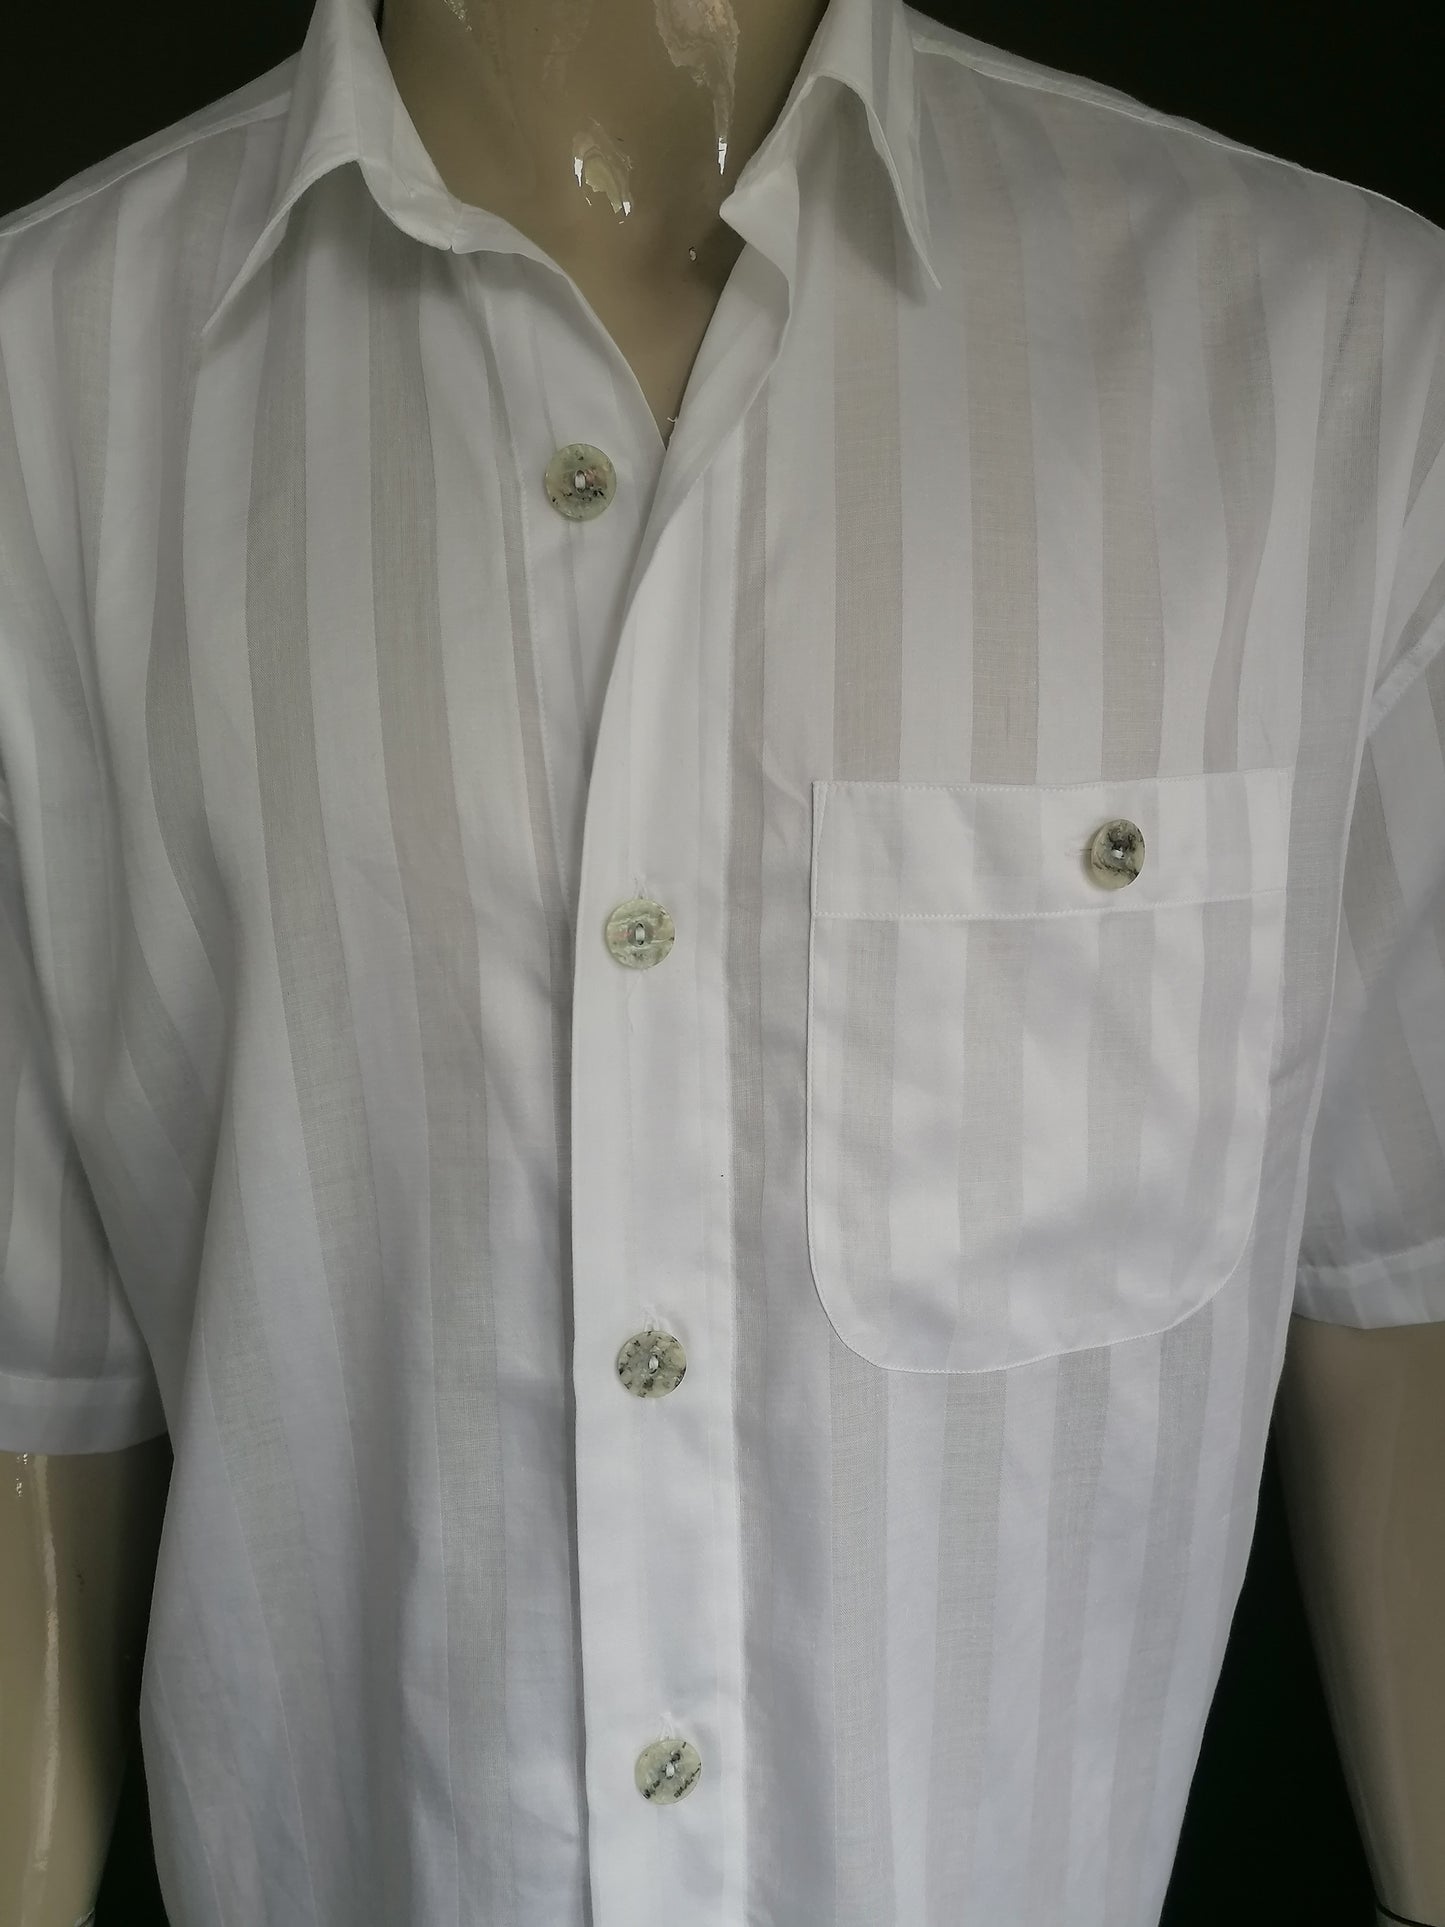 Vintage Signum overhemd korte mouw en grotere knopen. Wit gestreept motief. Maat XL.